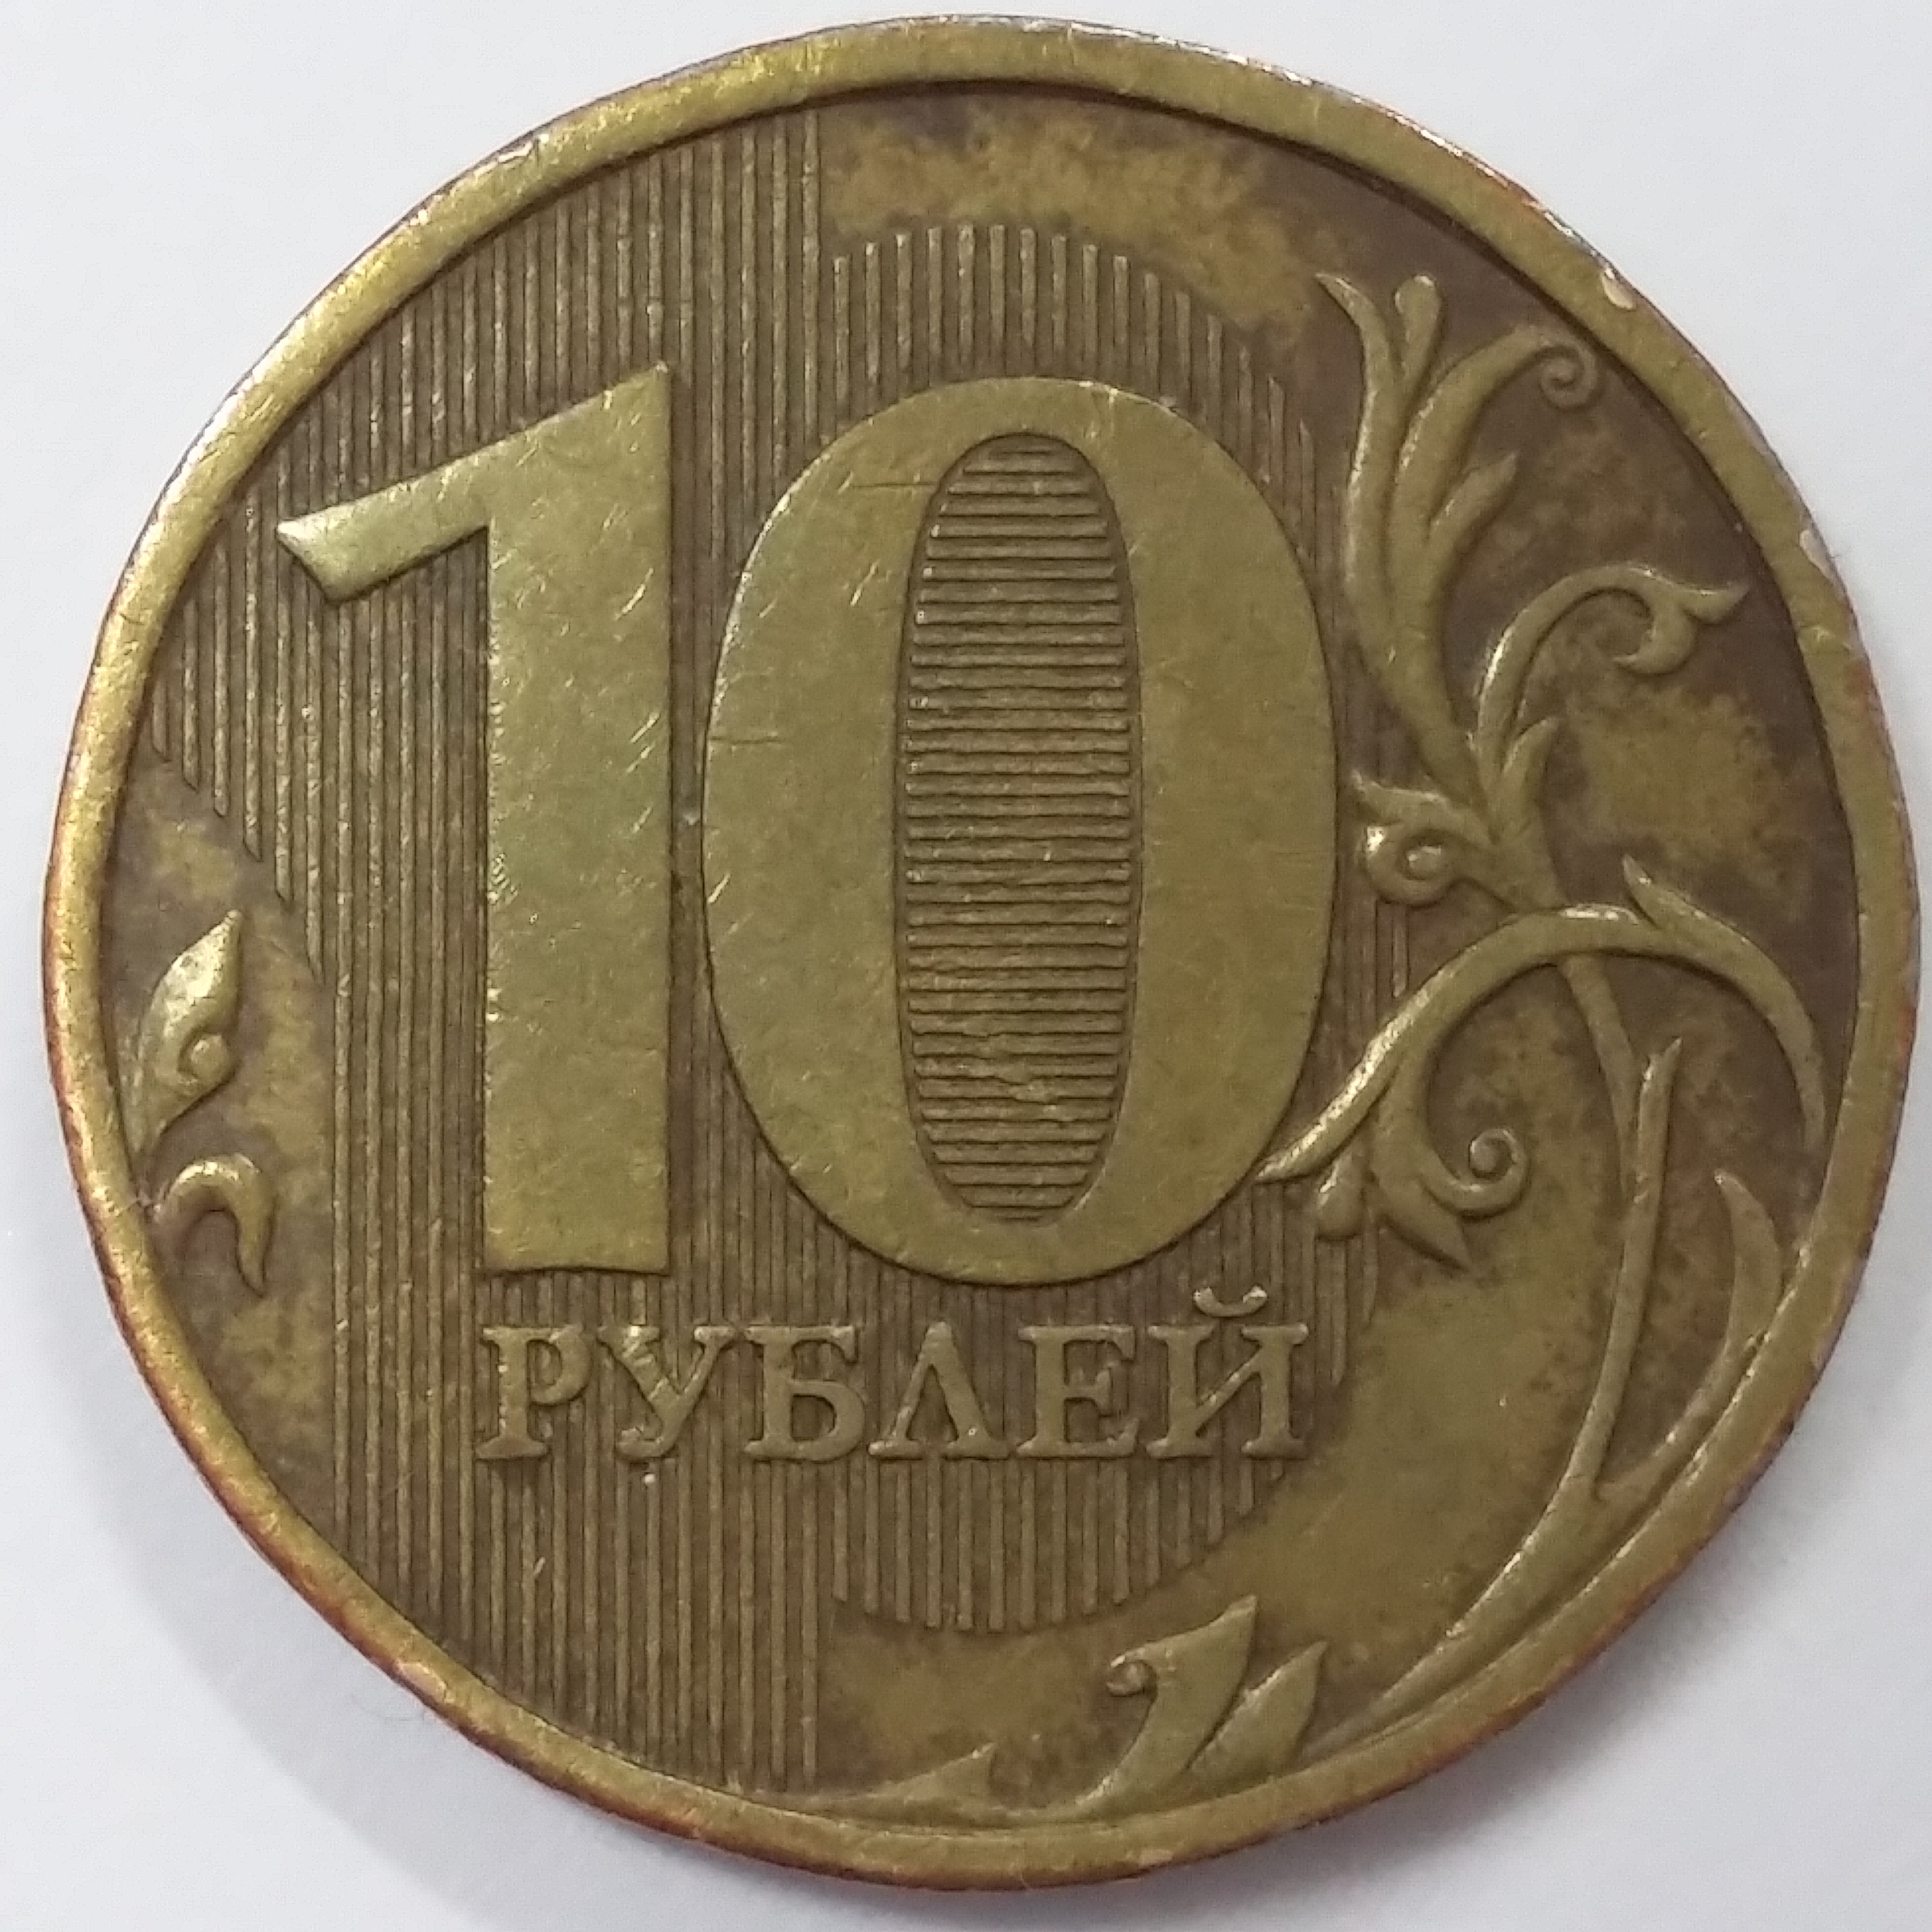 10 рублей 2009 года самые дорогие монеты и их стоимость